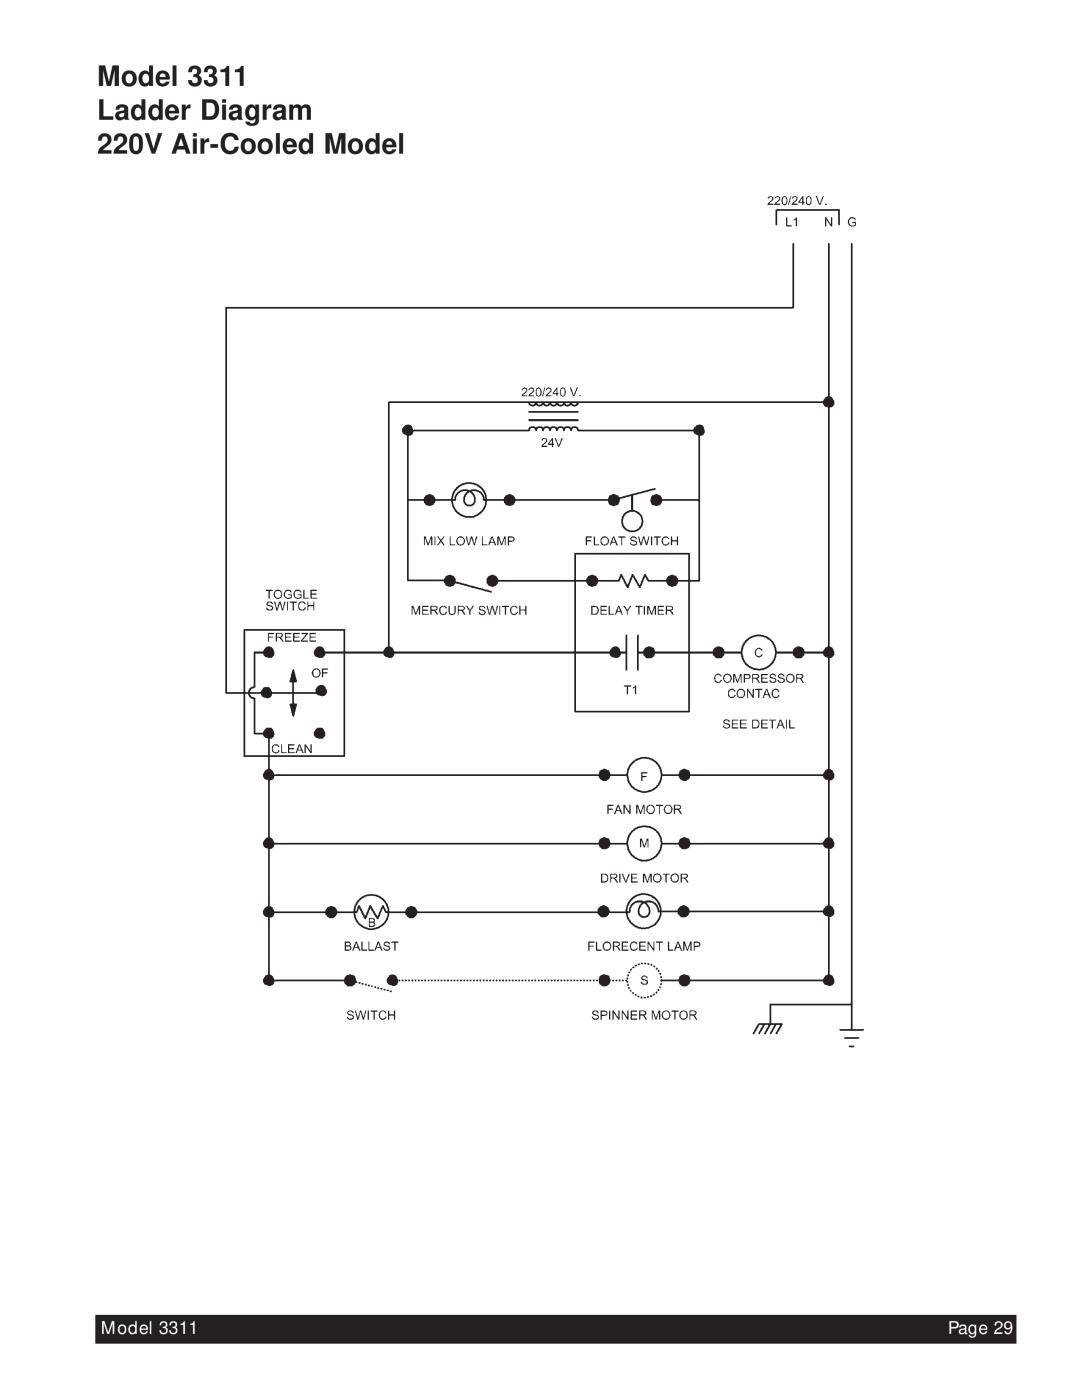 Beverage-Air 3311 manual Model Ladder Diagram 220V Air-CooledModel, Page 